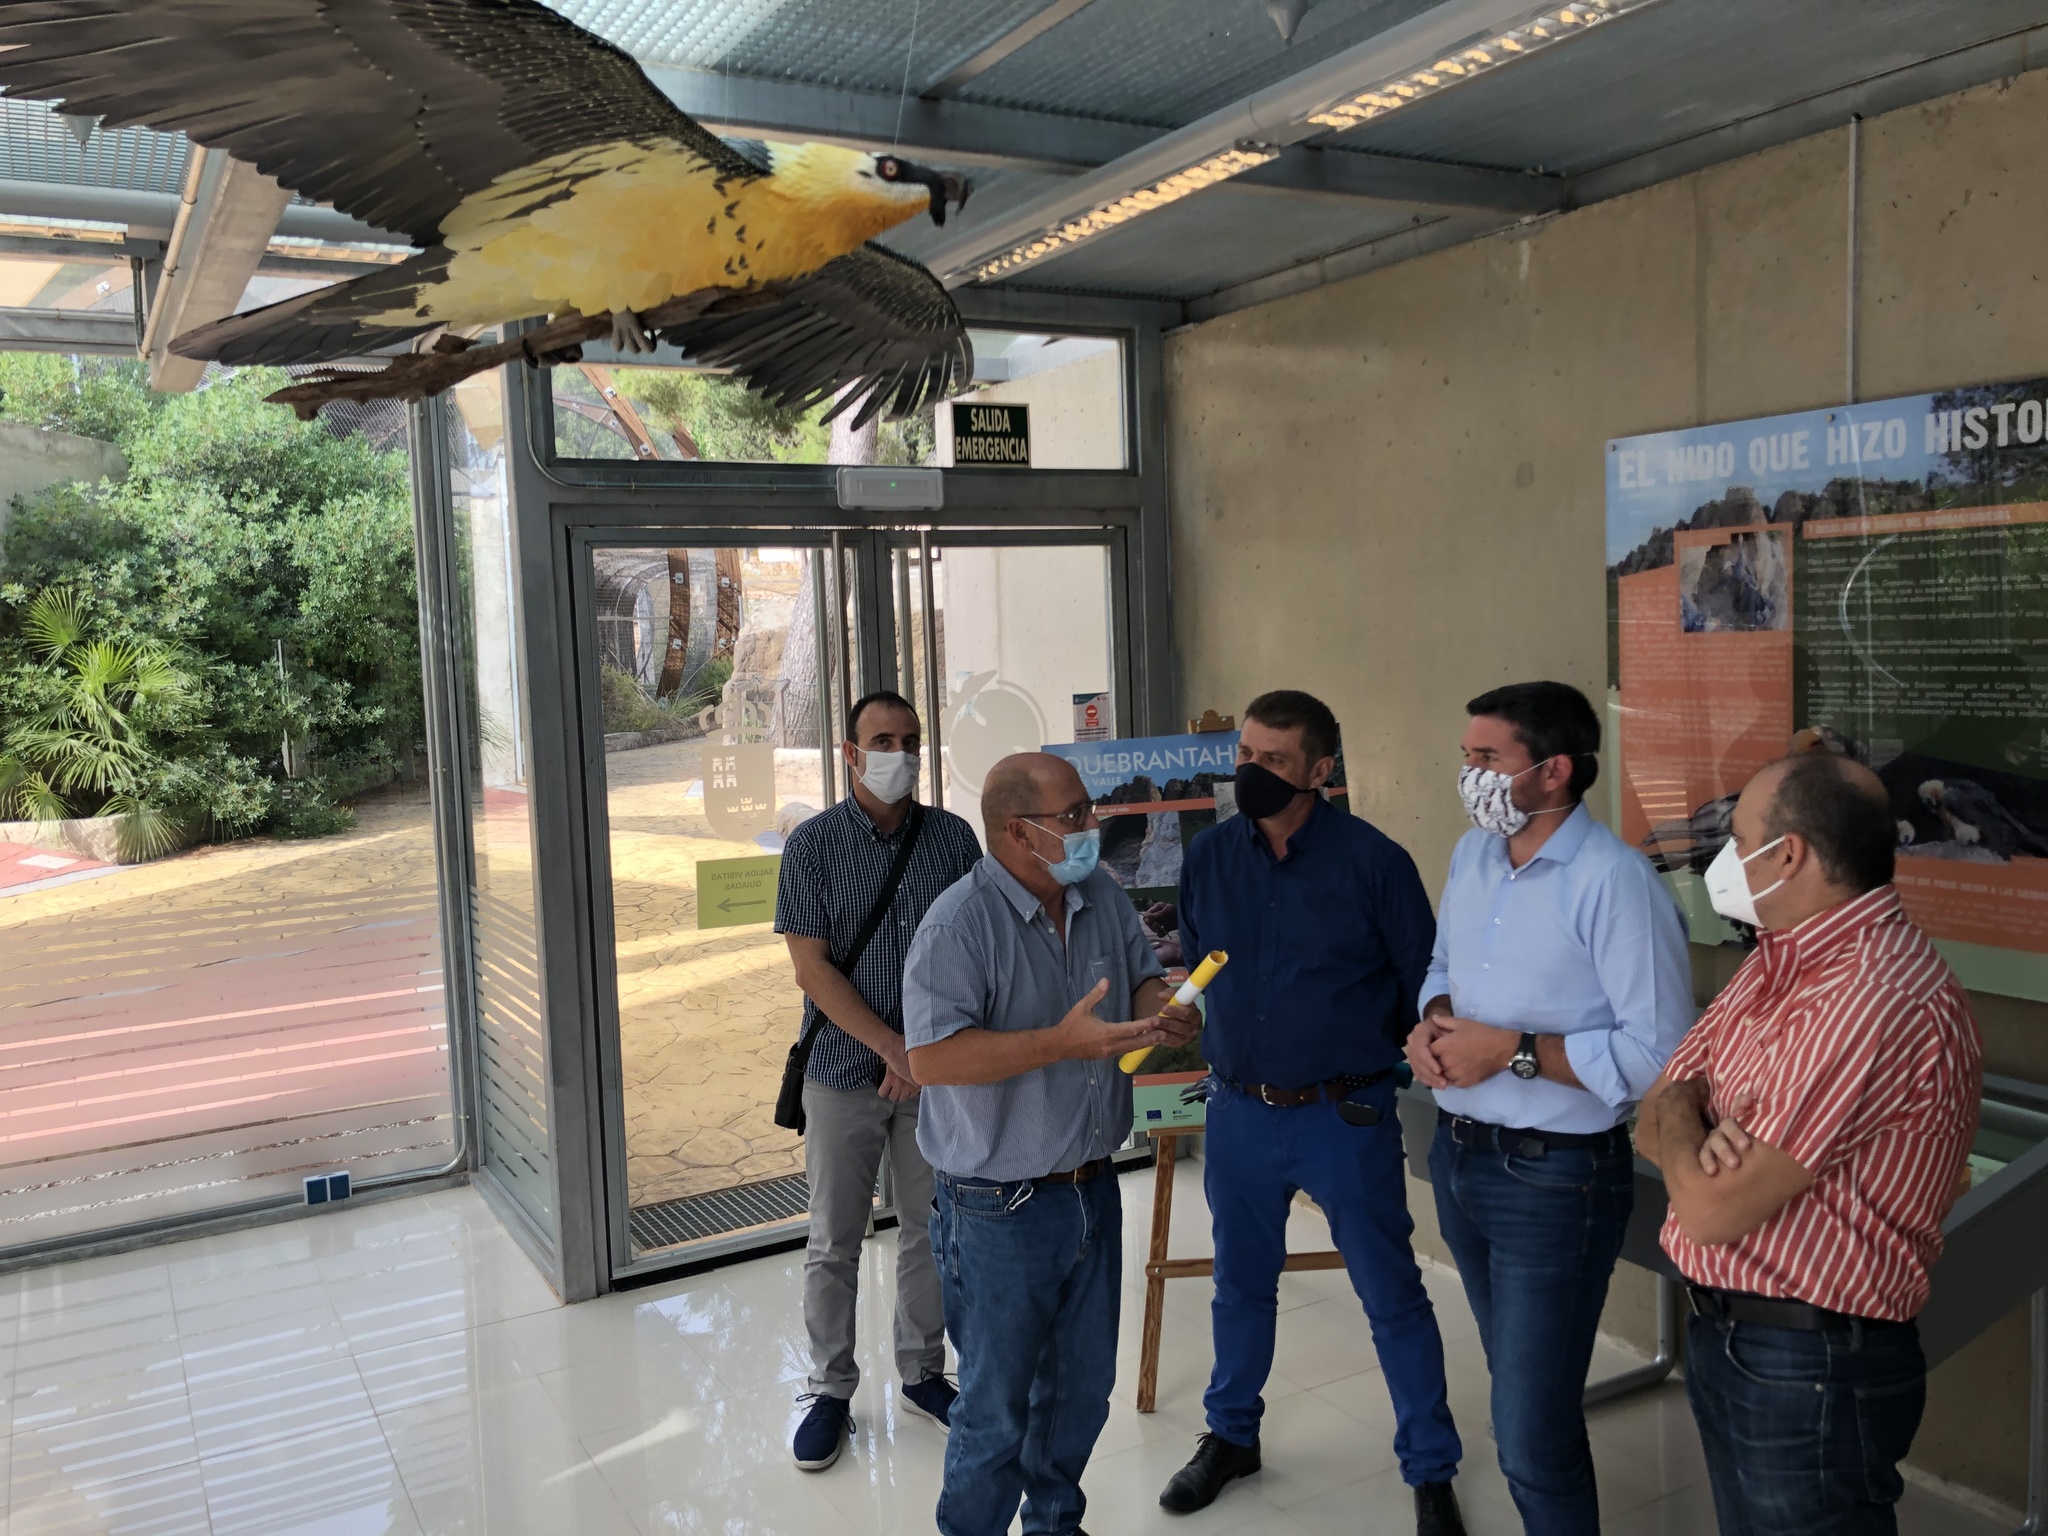 Inauguración del módulo expositivo sobre el histórico nido de quebrantahuesos de la Sierra de El Valle Carrascoy. Imagen: CARM